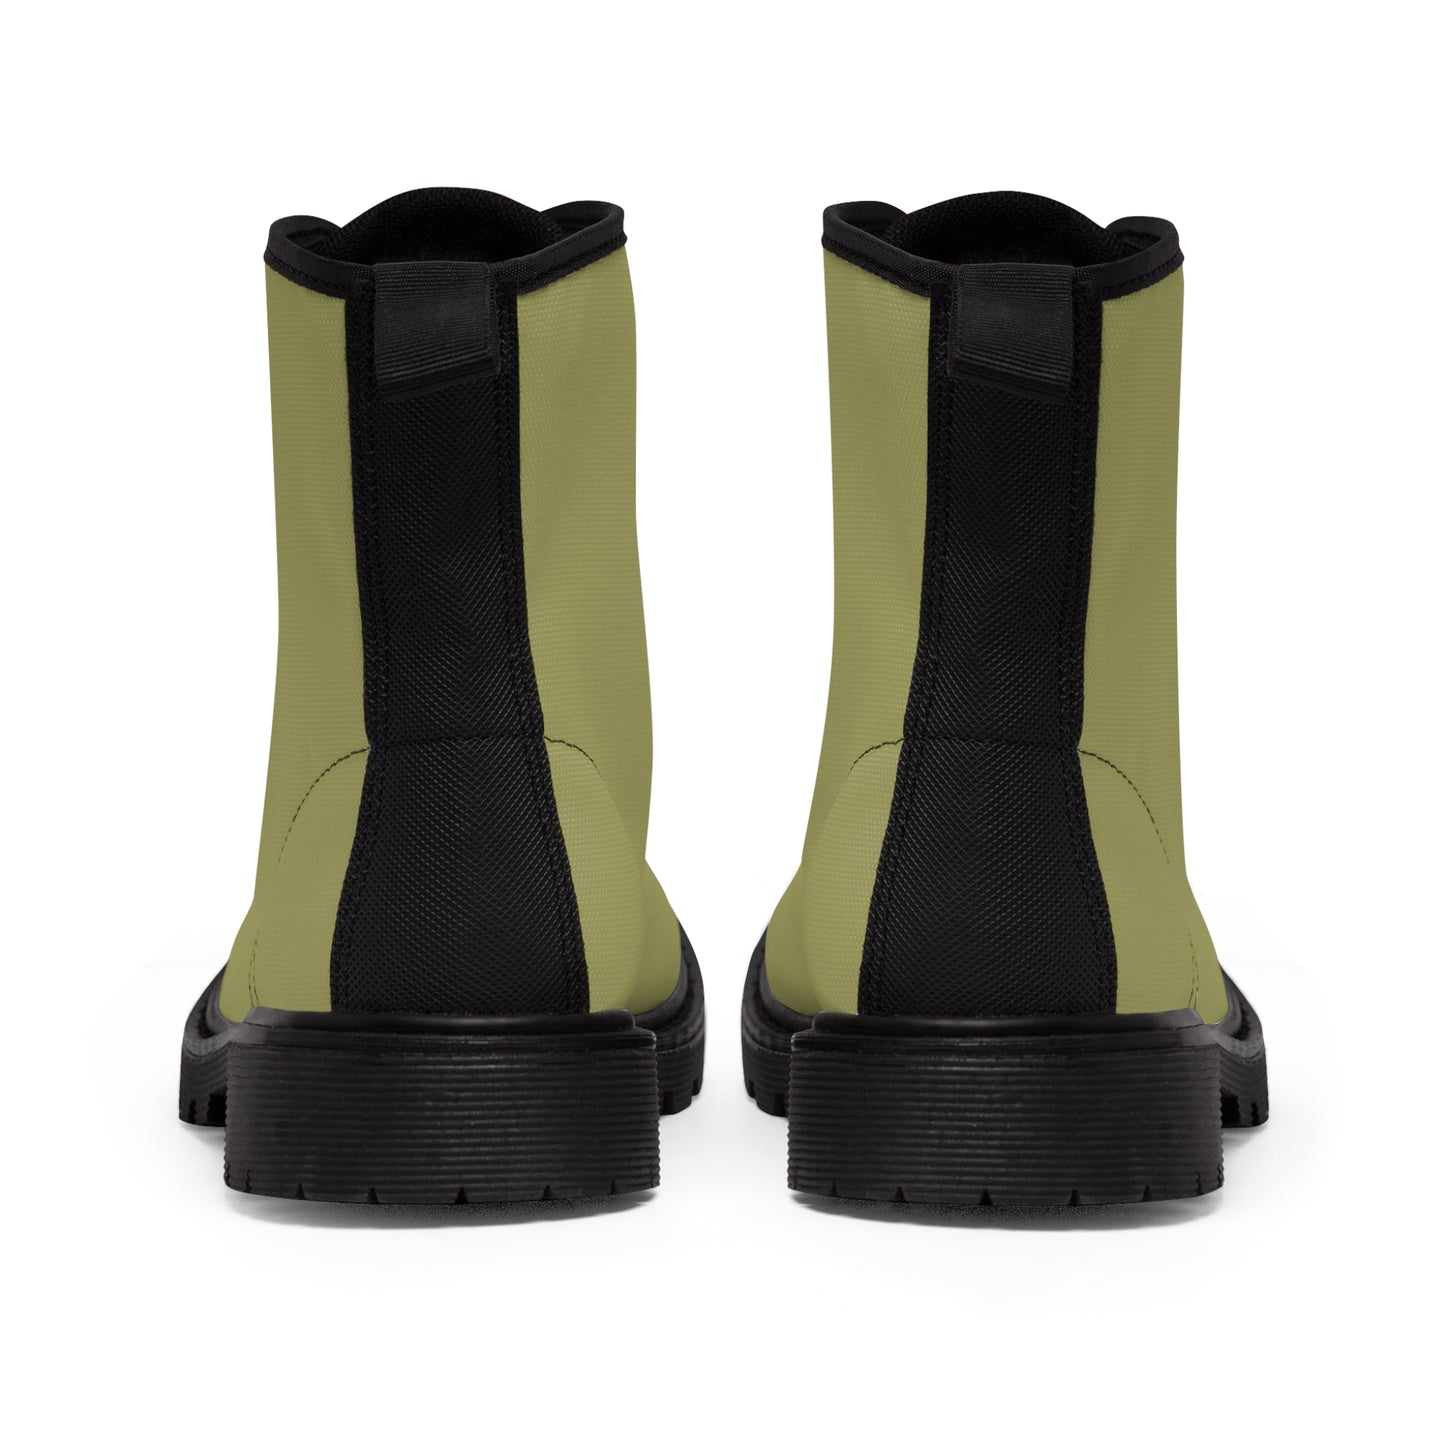 Men's Canvas Boots - Light Moss US 10.5 Black sole